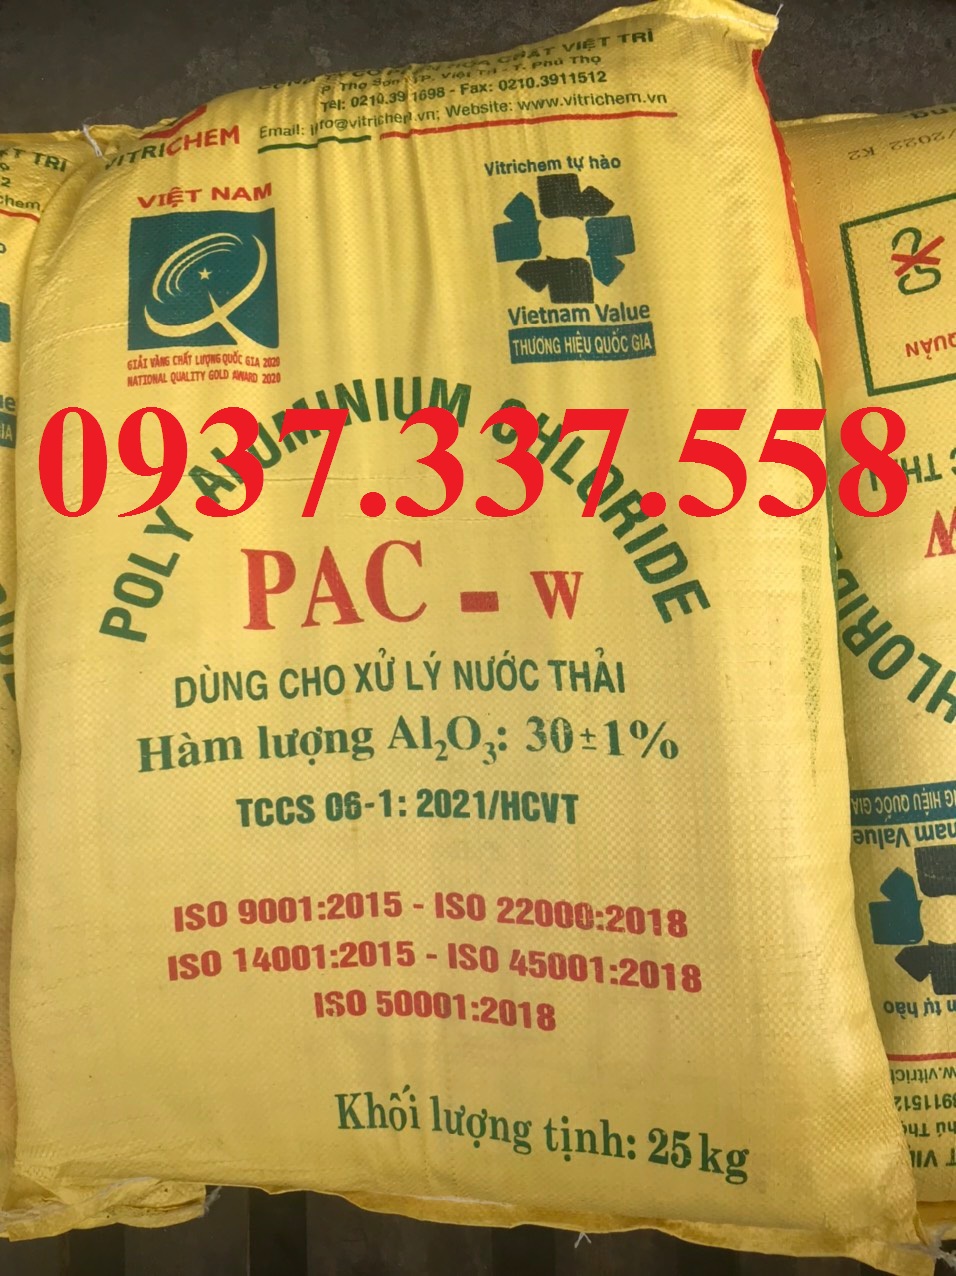 PAC W Việt Trì